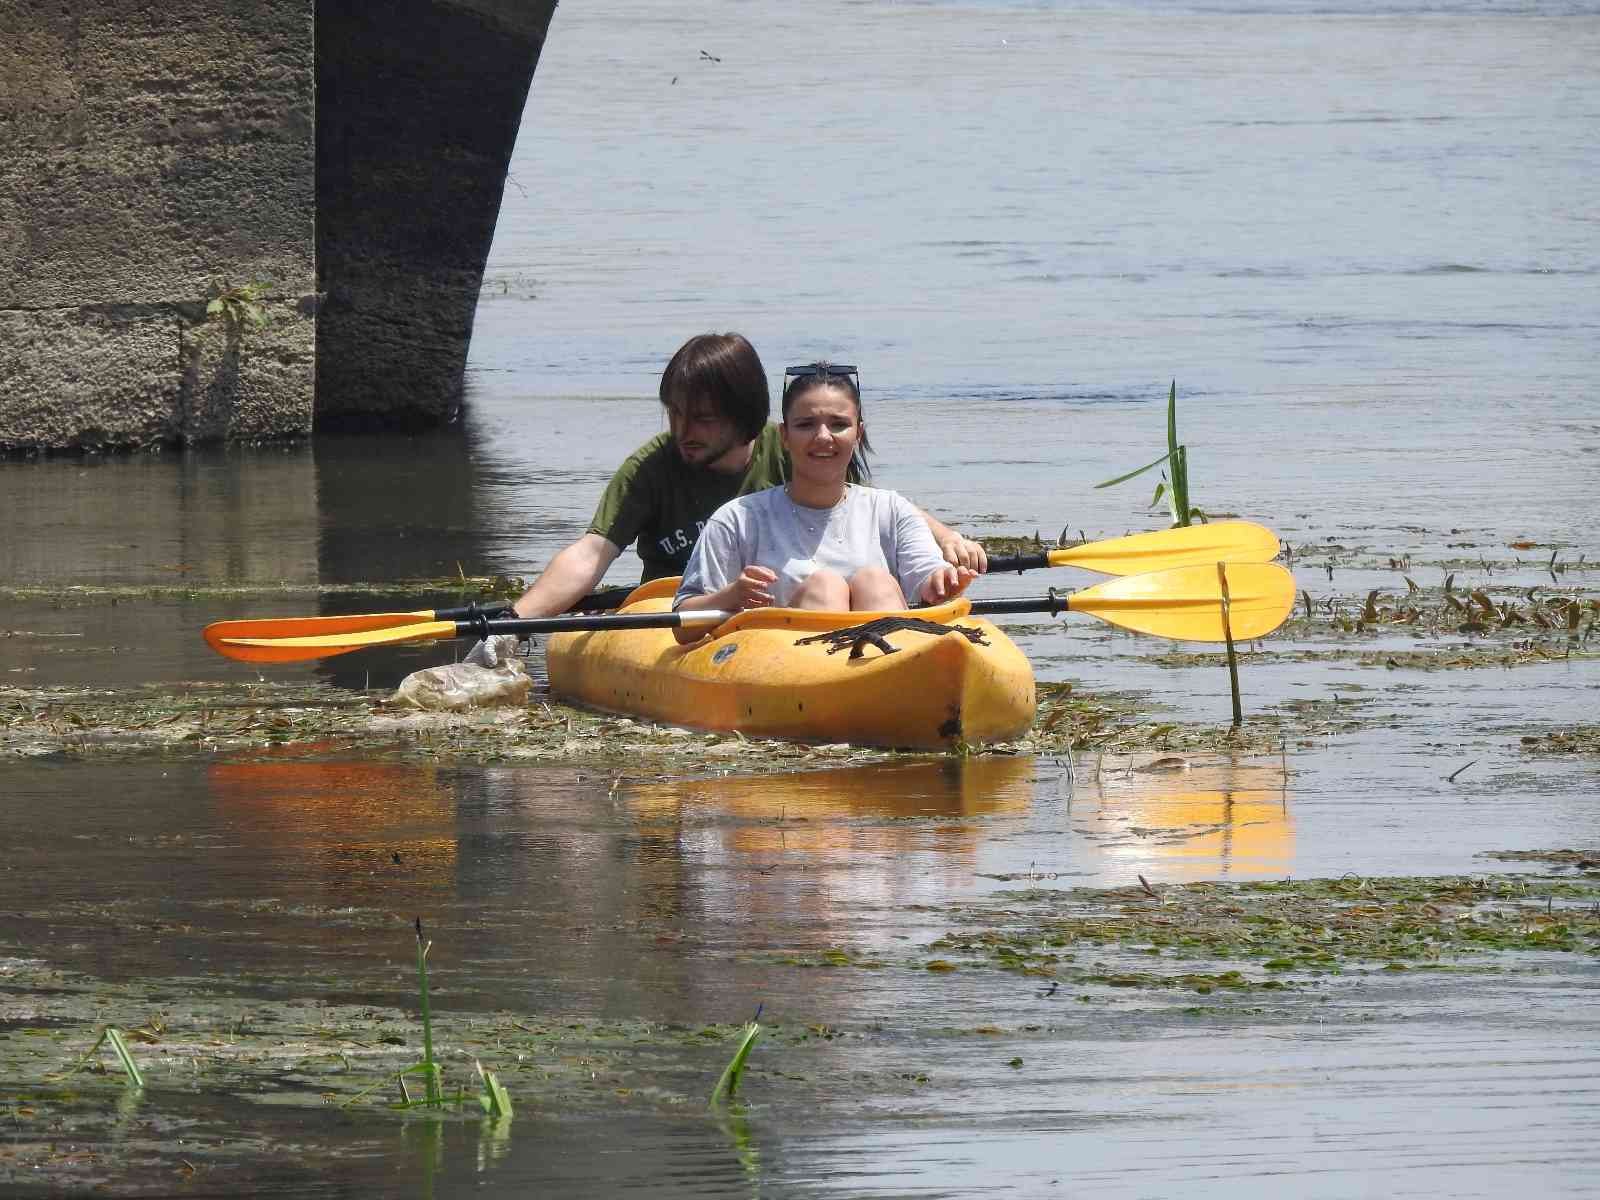 Çevreci gençler kano ile Tunca Nehri’ndeki çöpleri topladı